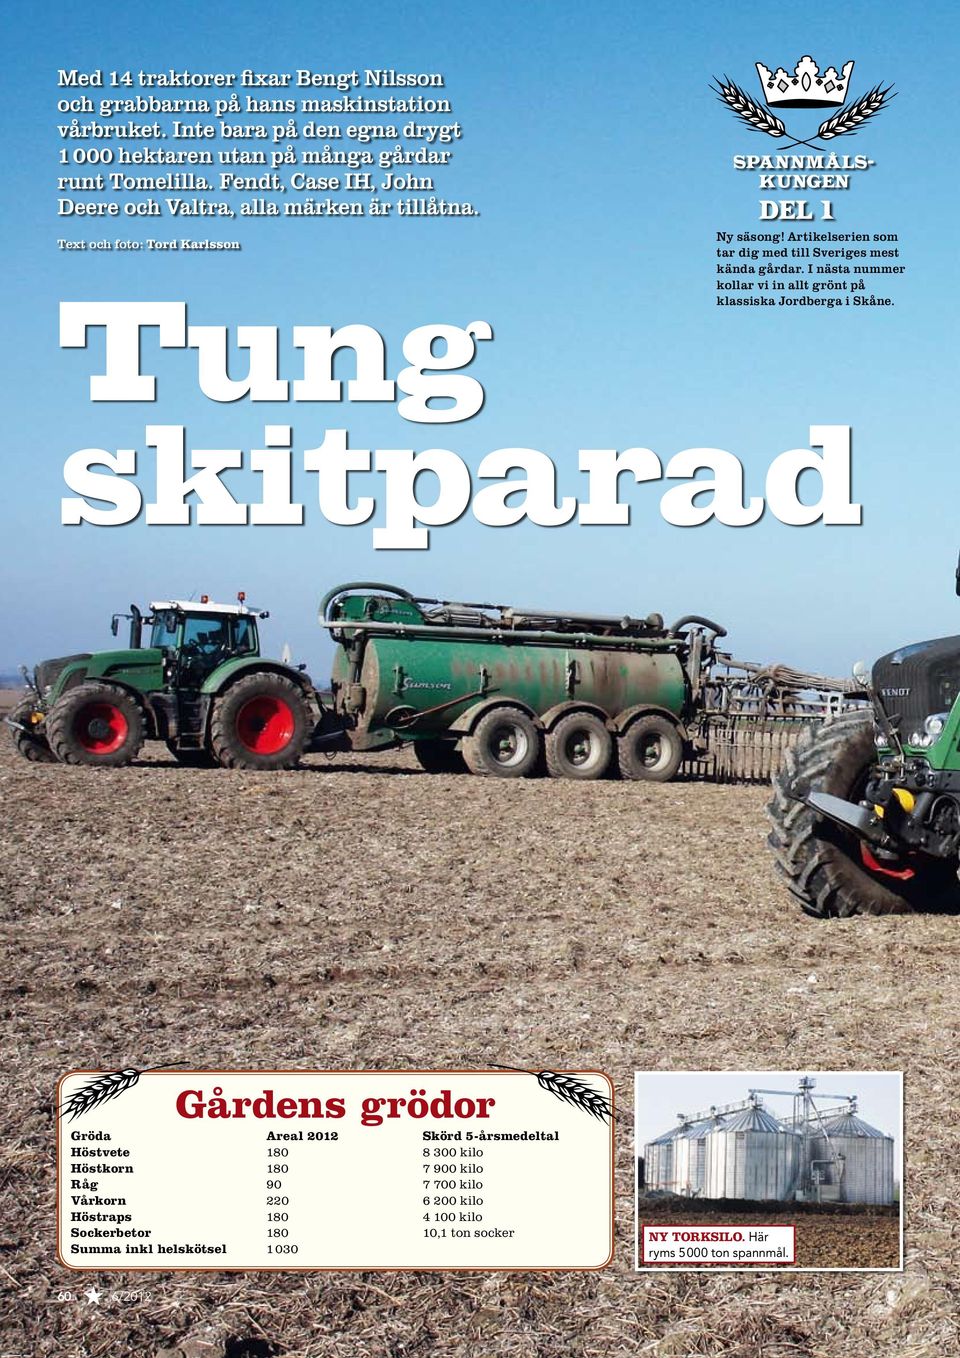 Artikelserien som tar dig med till Sveriges mest kända gårdar. I nästa nummer kollar vi in allt grönt på klassiska Jordberga i Skåne.